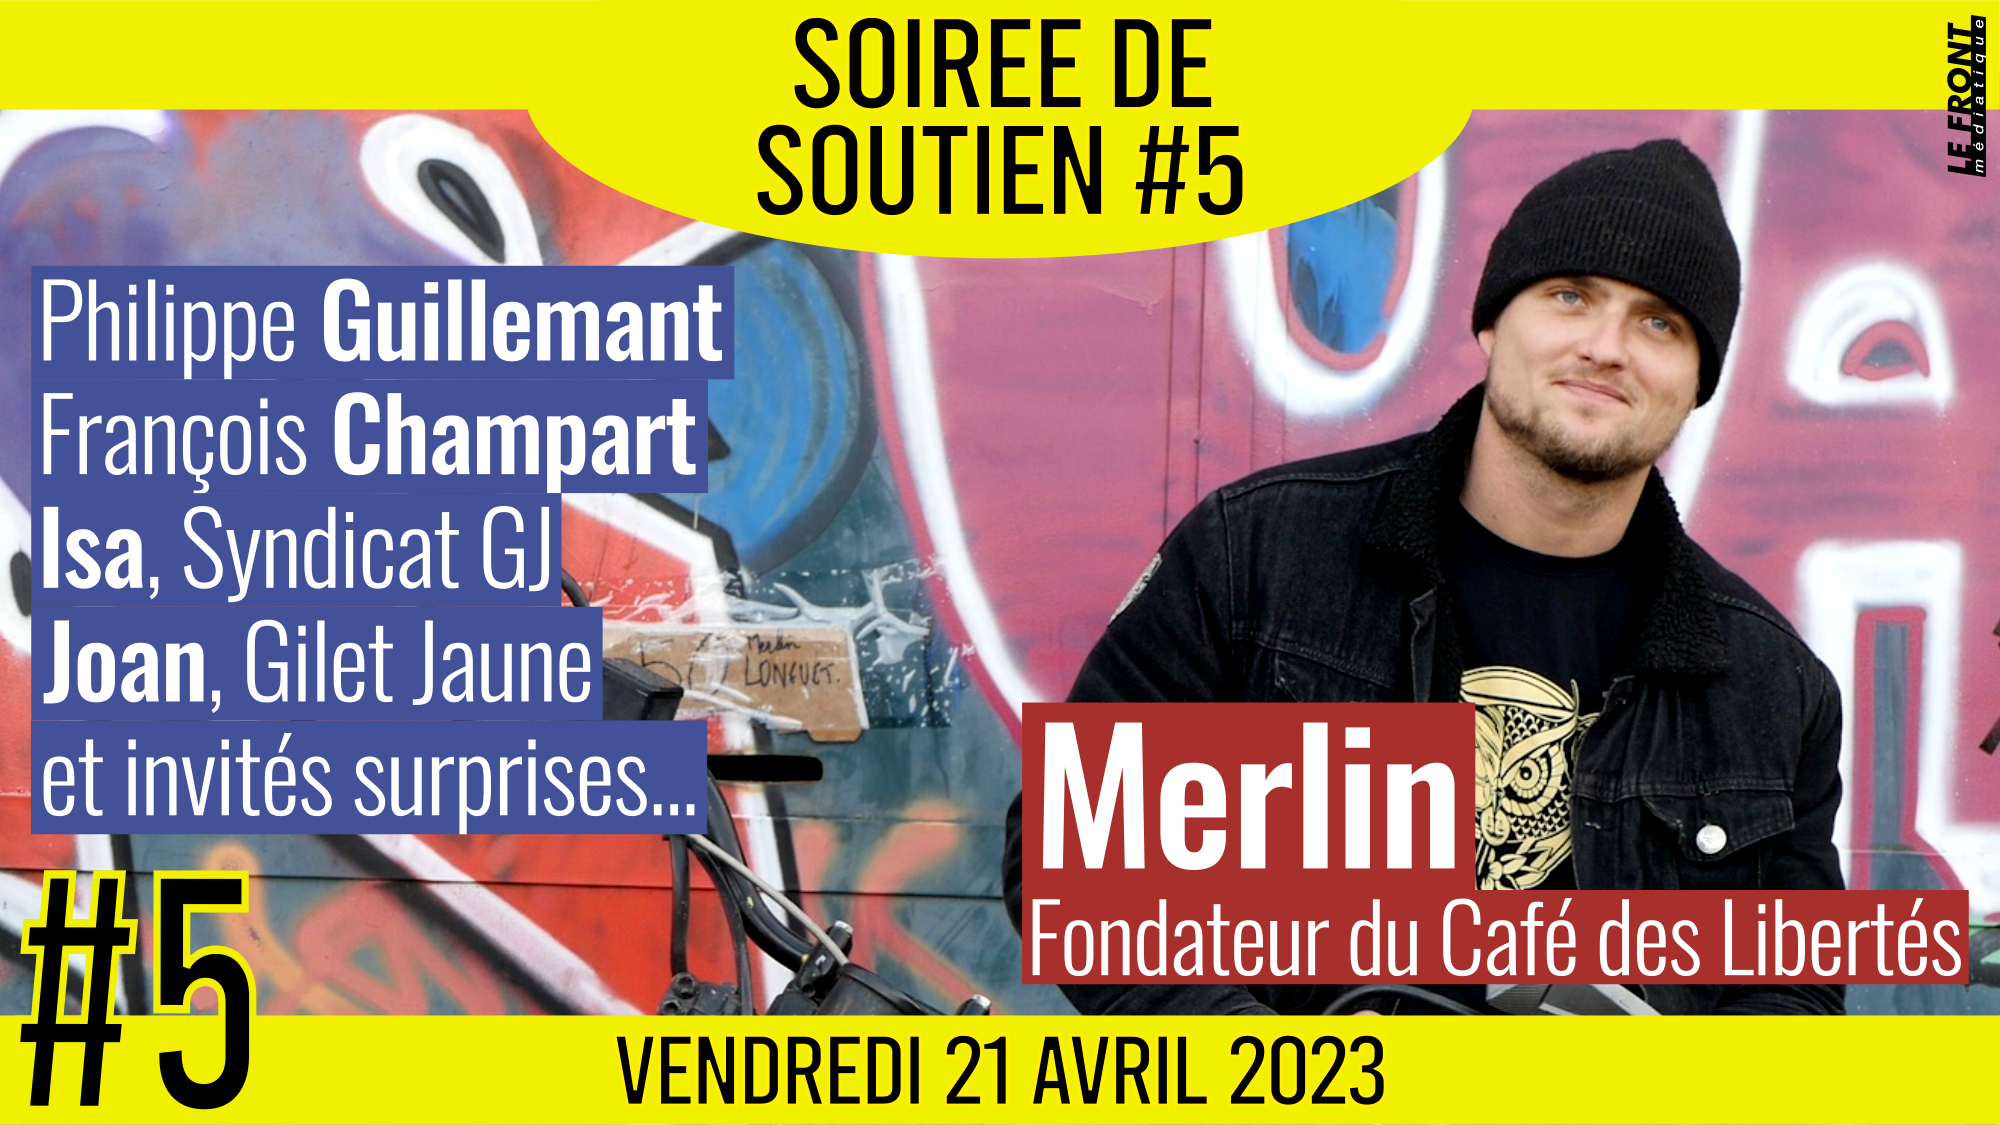 ✊ SOIRÉE DE SOUTIEN #5 💛 MERLIN du Café des Libertés 👨‍👩‍👧‍👦 Philippe Guillemant, François Champart, Joan, Isa, Cécile Maïchak, Jonathan & Priscilla 📅 21-04-2023